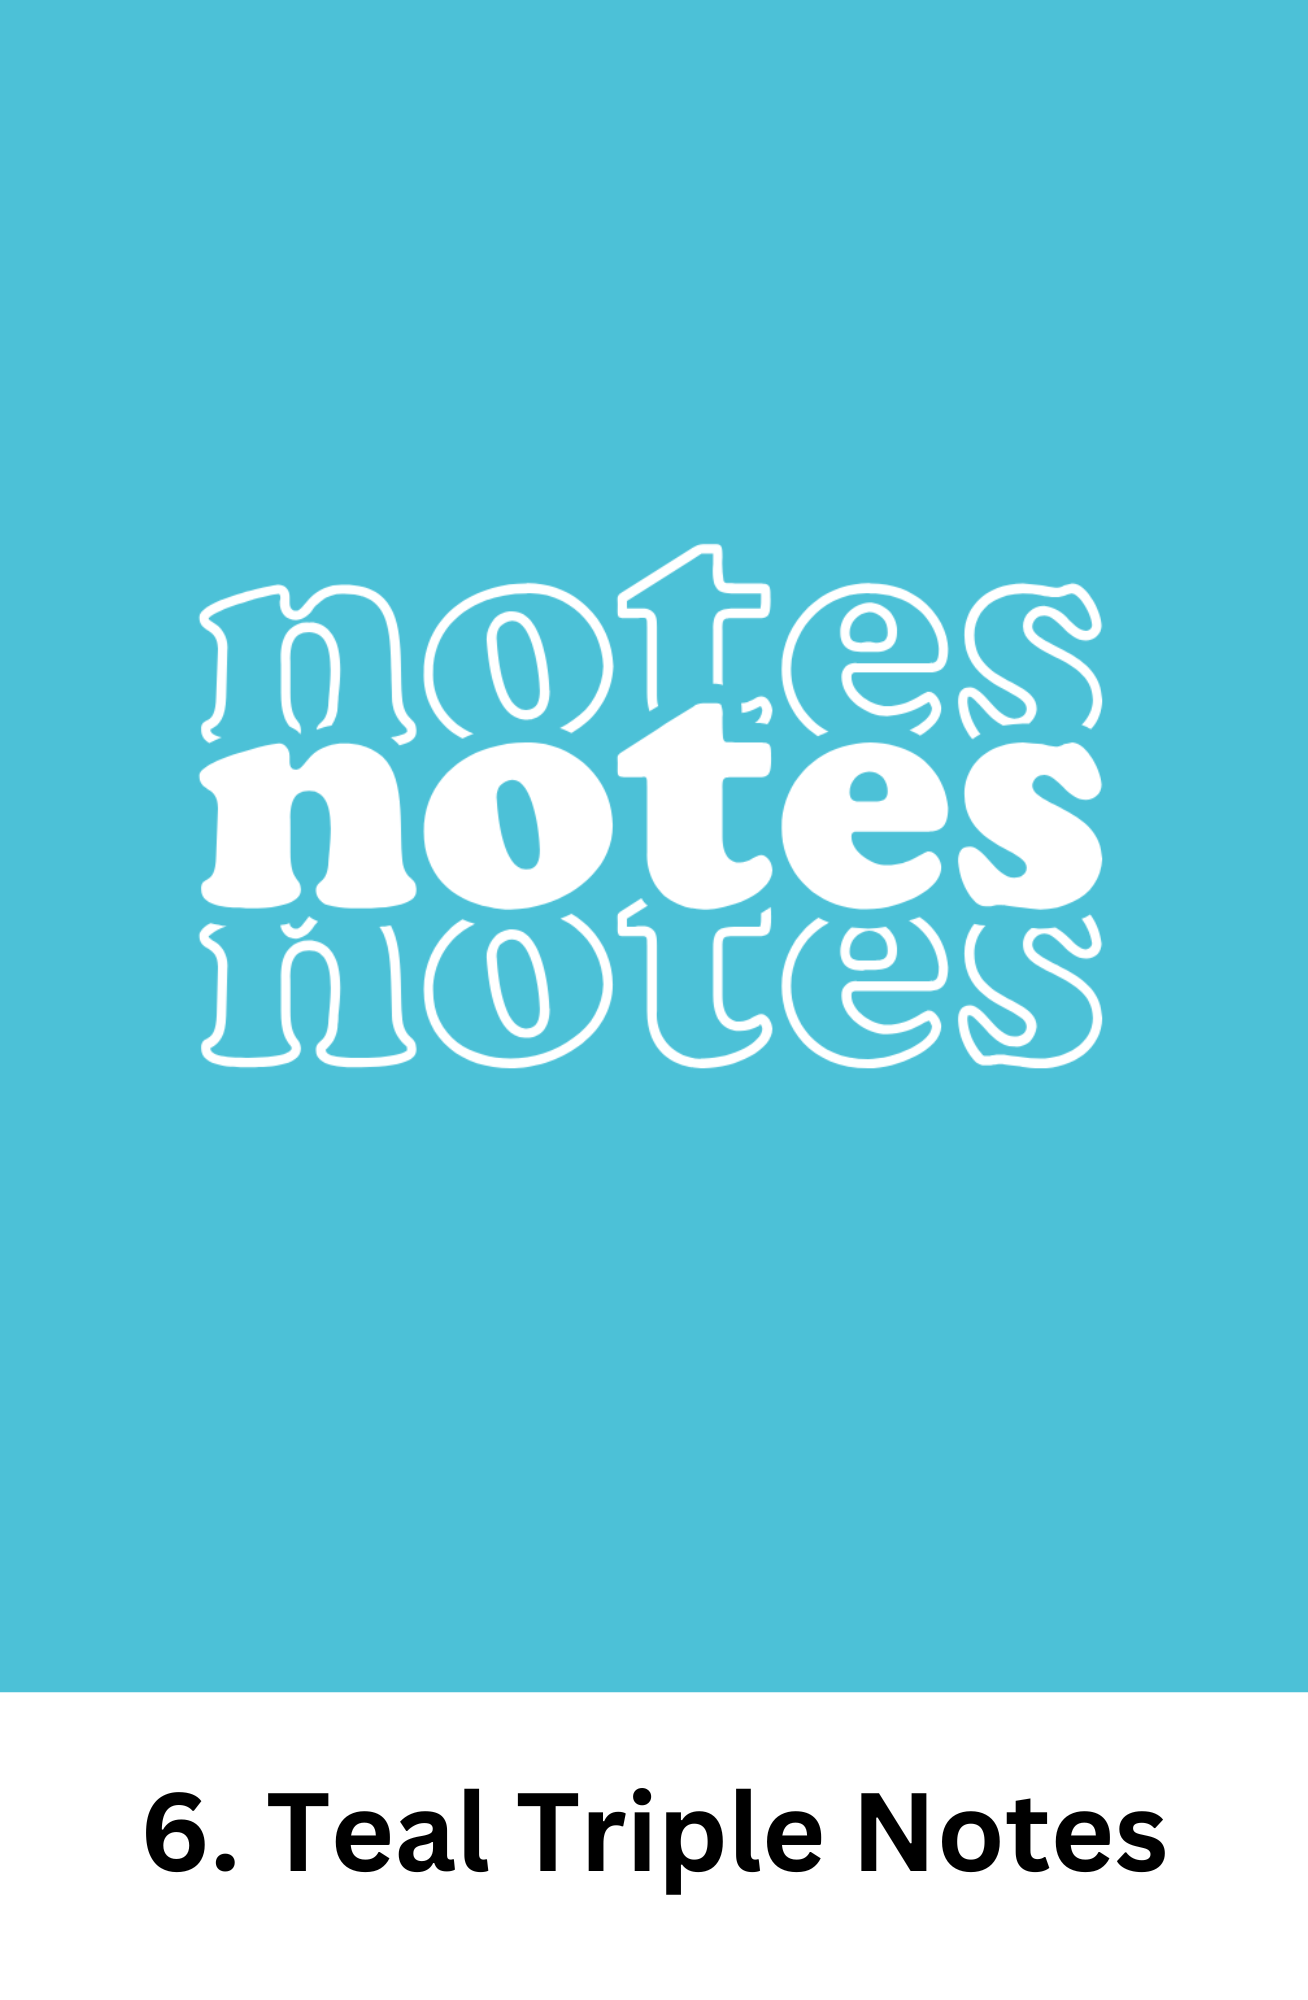 Teacher Meeting Notes Journal - Mini Size/Spiral